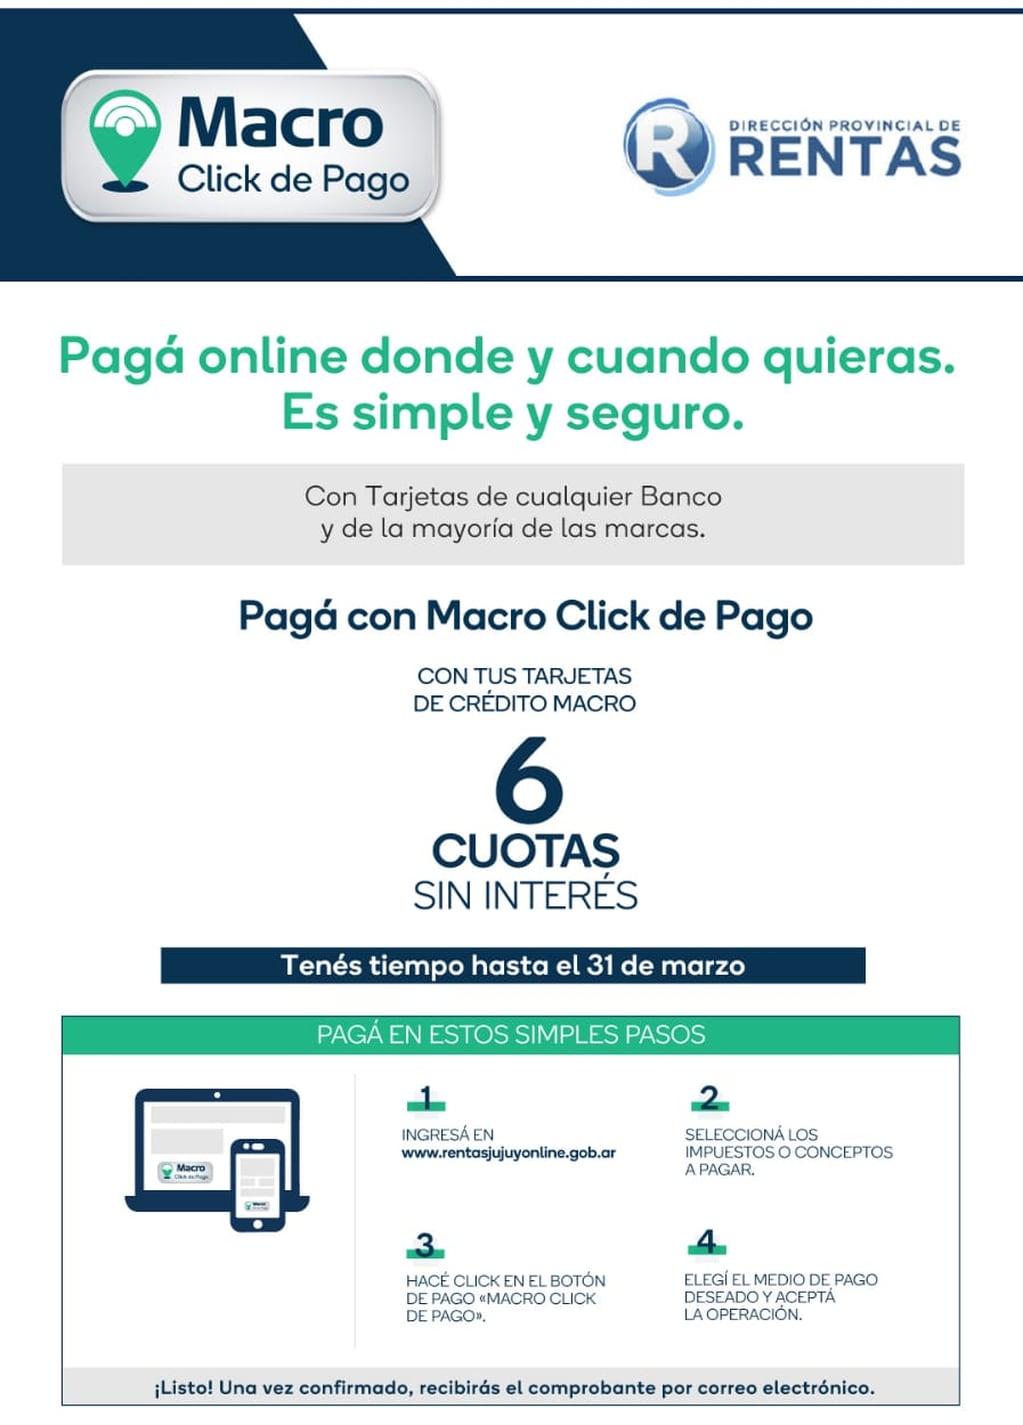 El sistema Macro Click de Pago permite a los contribuyentes de Jujuy abonar sus impuestos hasta en seis cuotas sin interés.